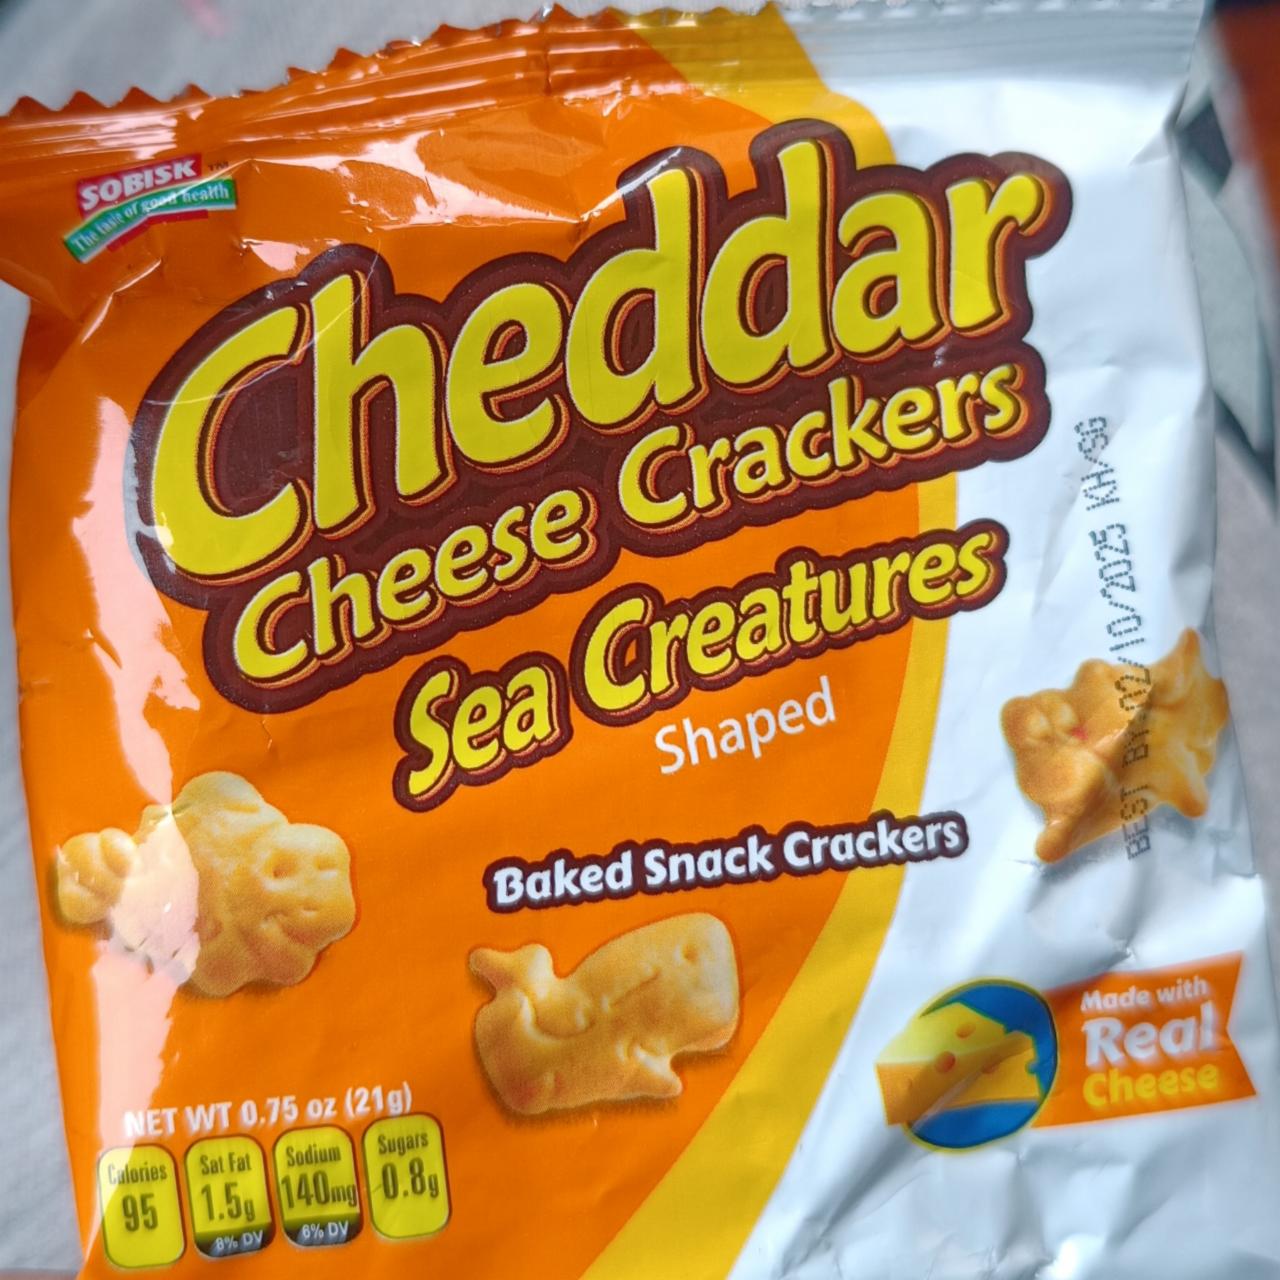 Zdjęcia - Cheddar cheese crackers sea creatures Sobisk